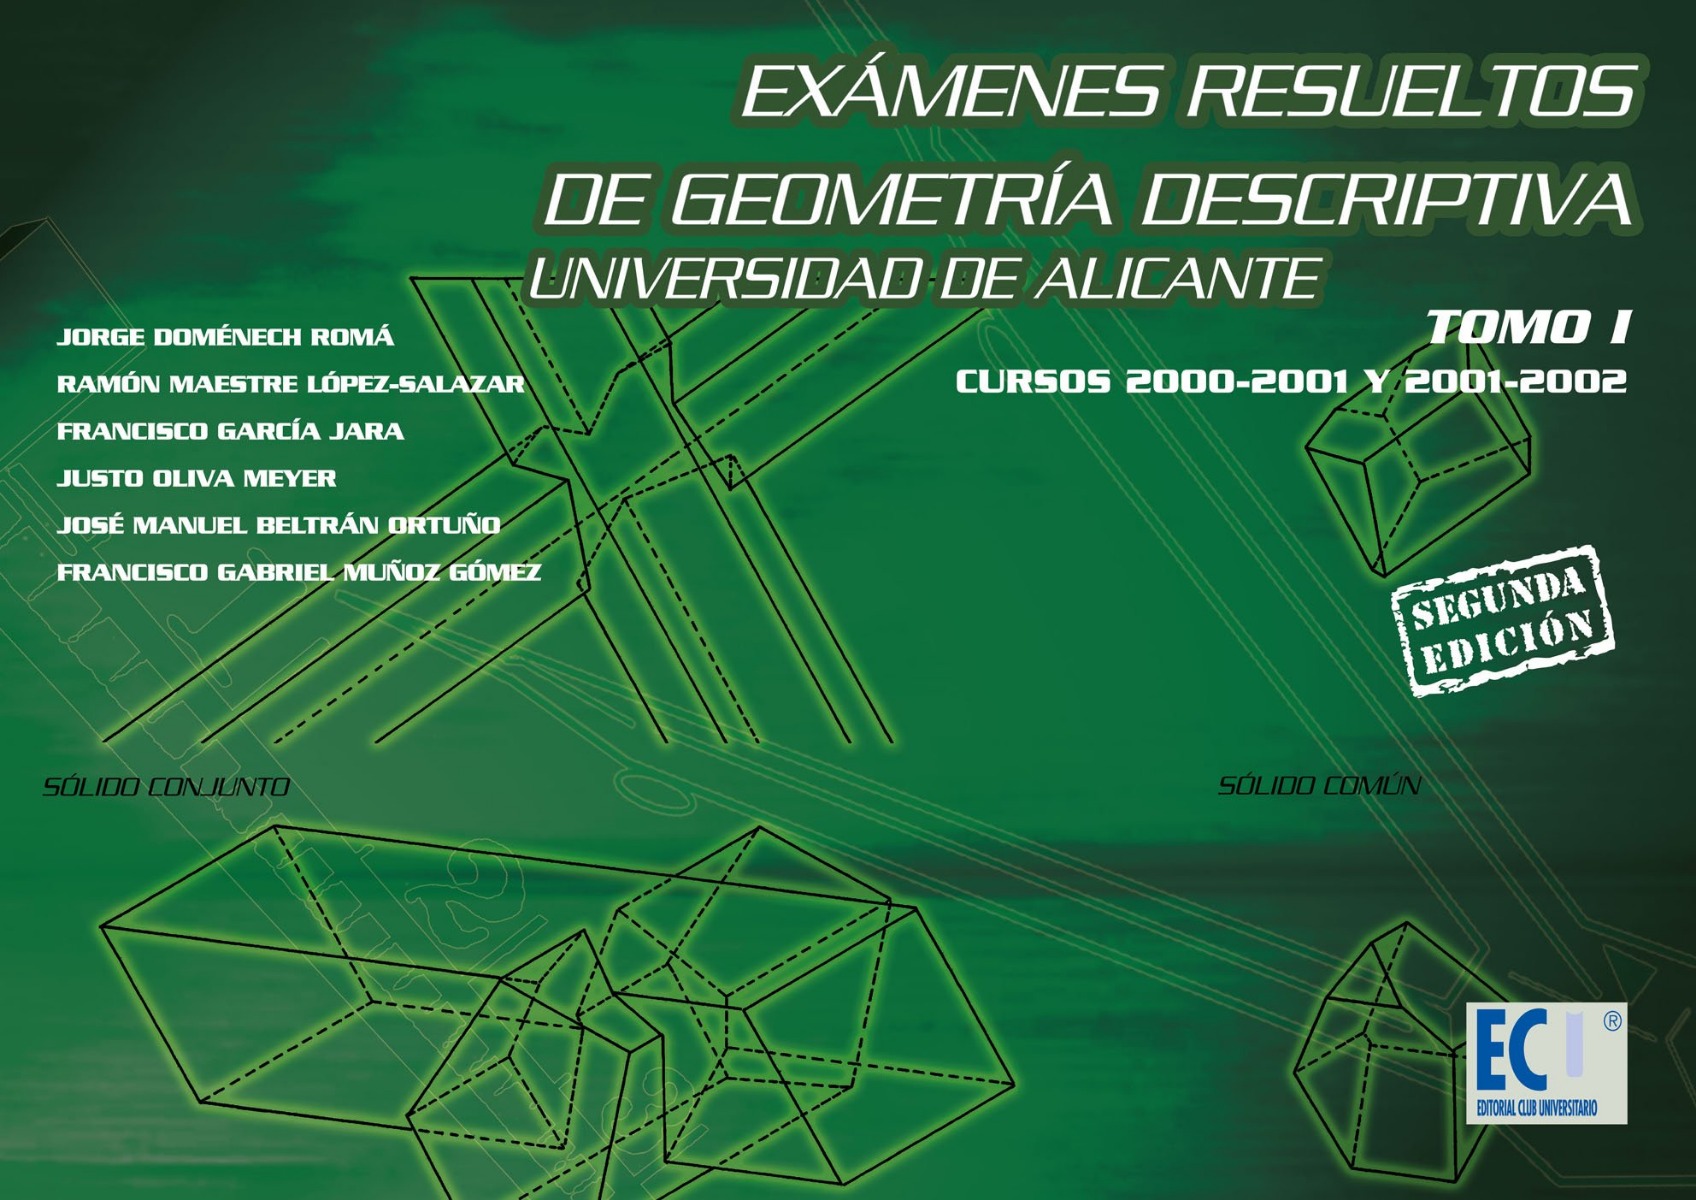 Examenes resueltos de Geometría Descriptiva. Tomo I. Curso 2000-2001 y 2001-2002.-0